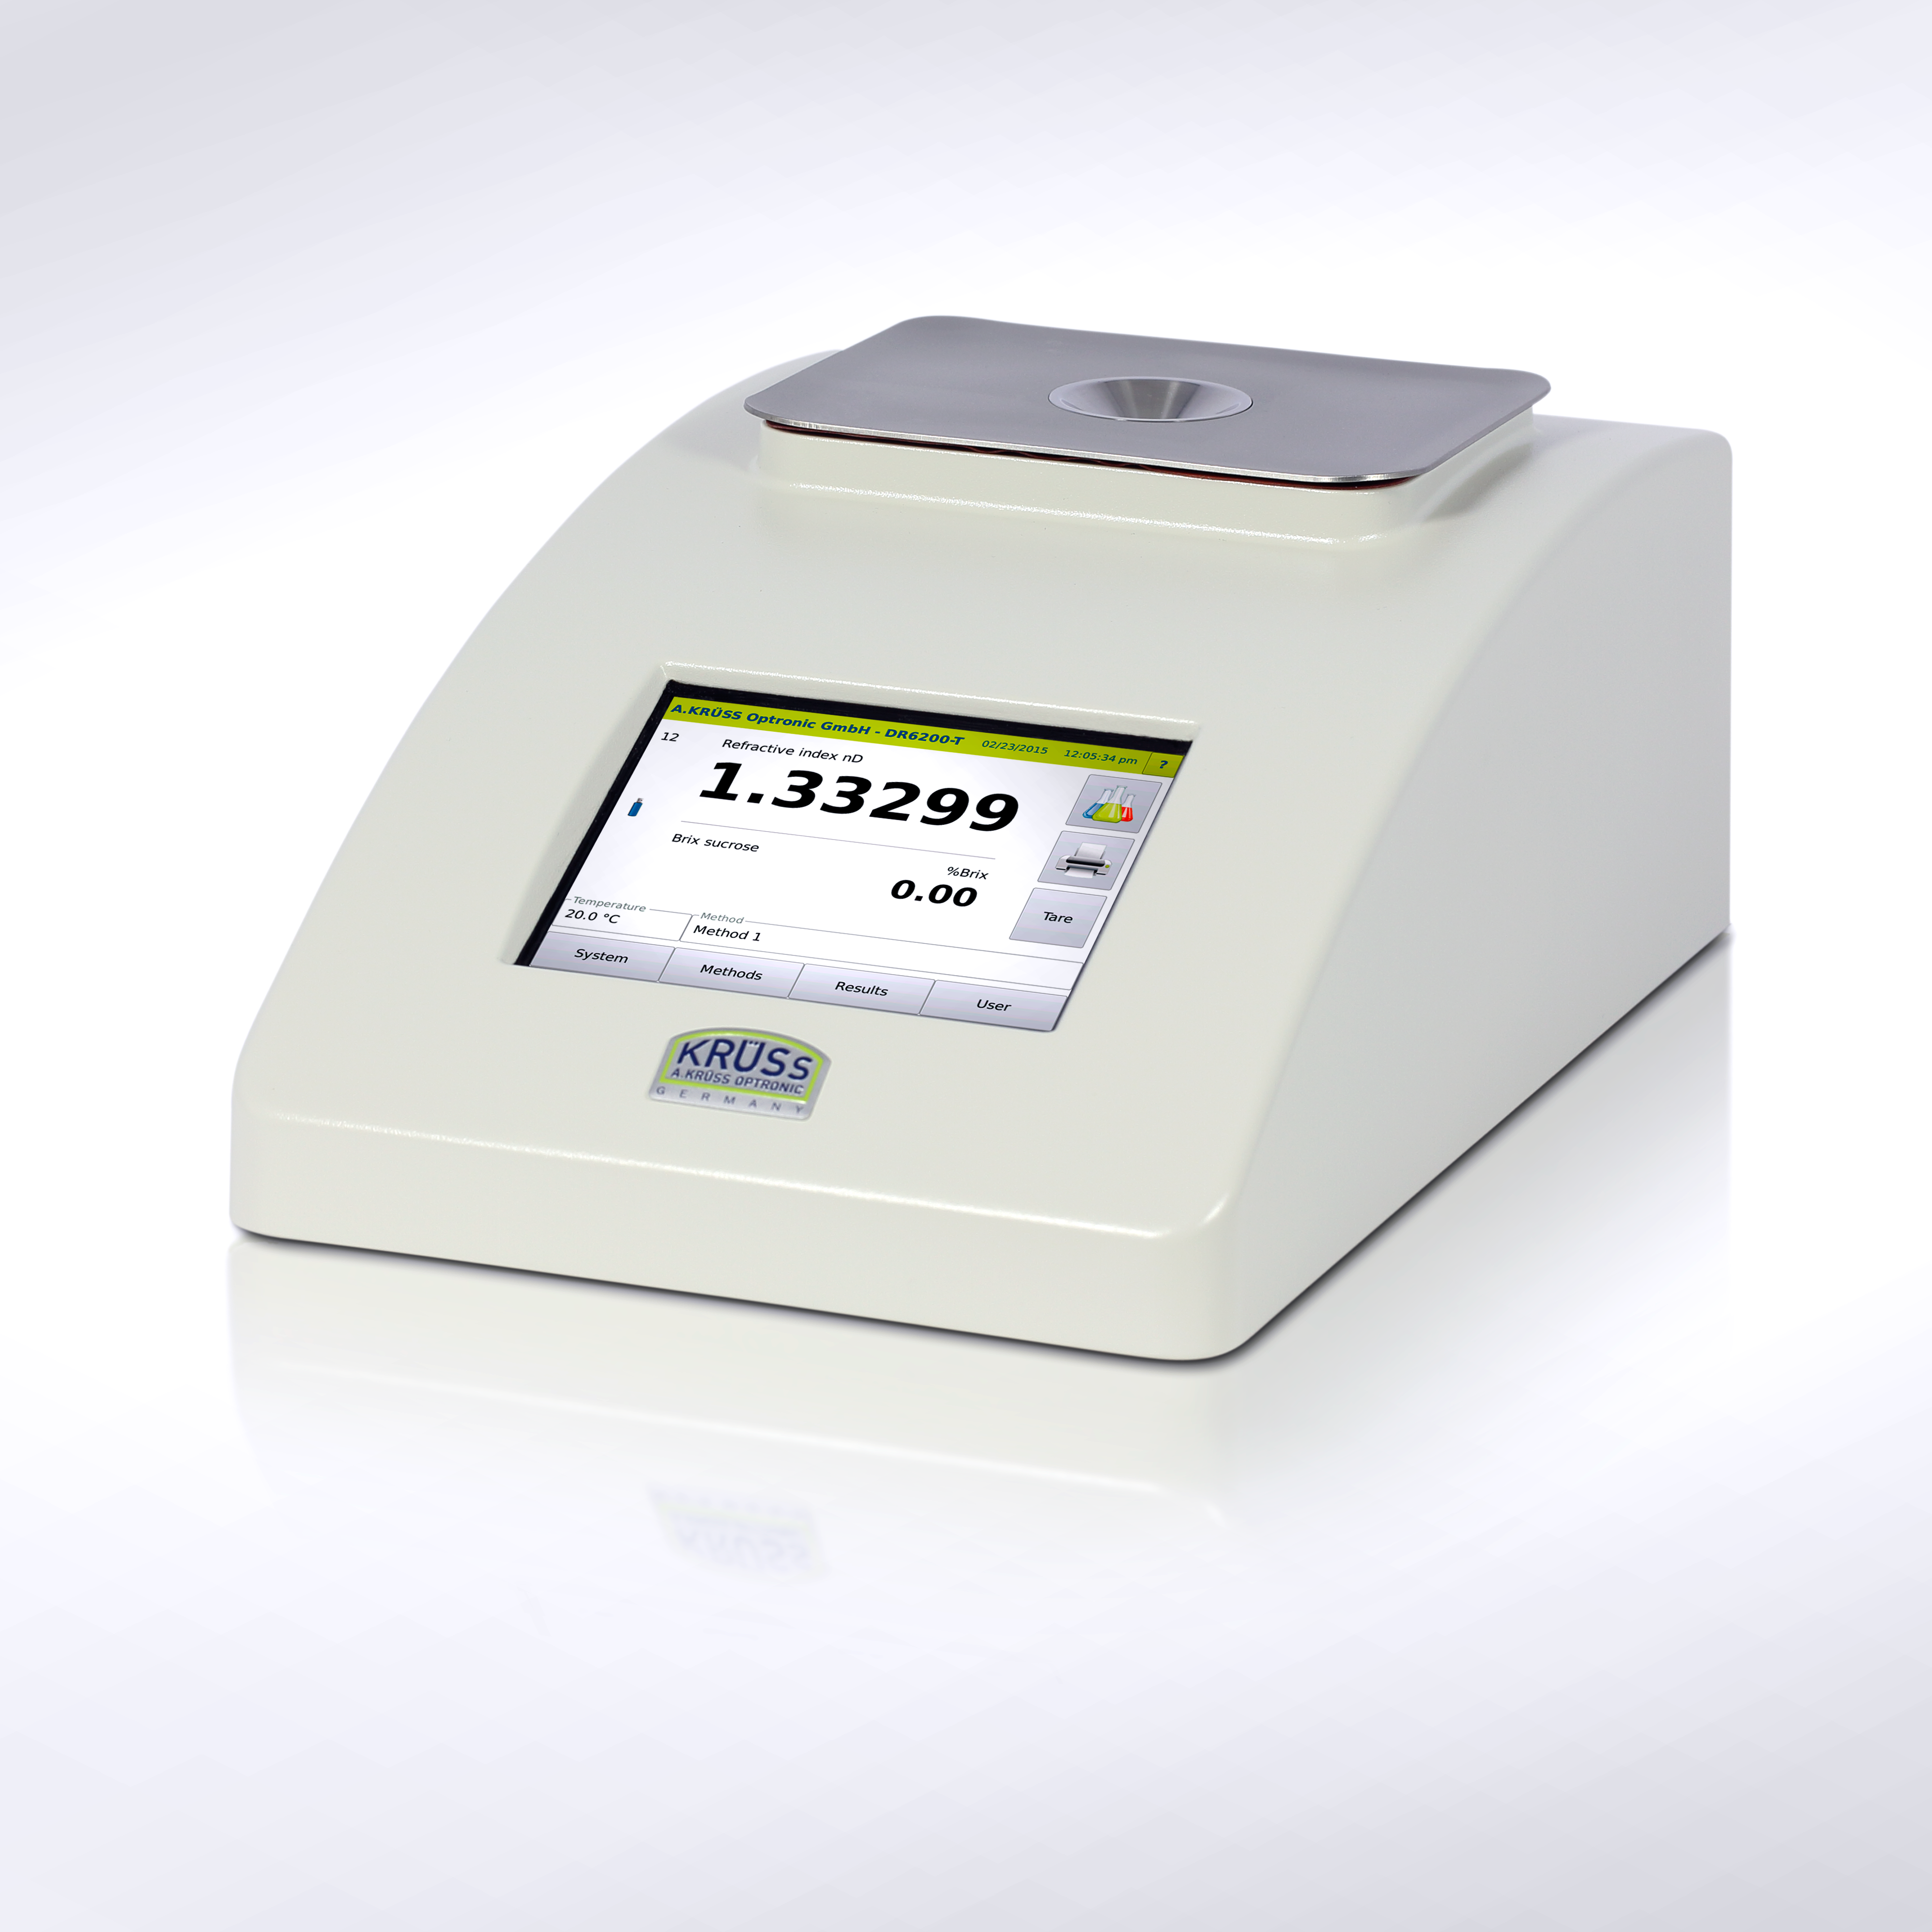 Le réfractomètre numérique KRÜSS DR6200 mesure tous les échantillons  contenant du sucre